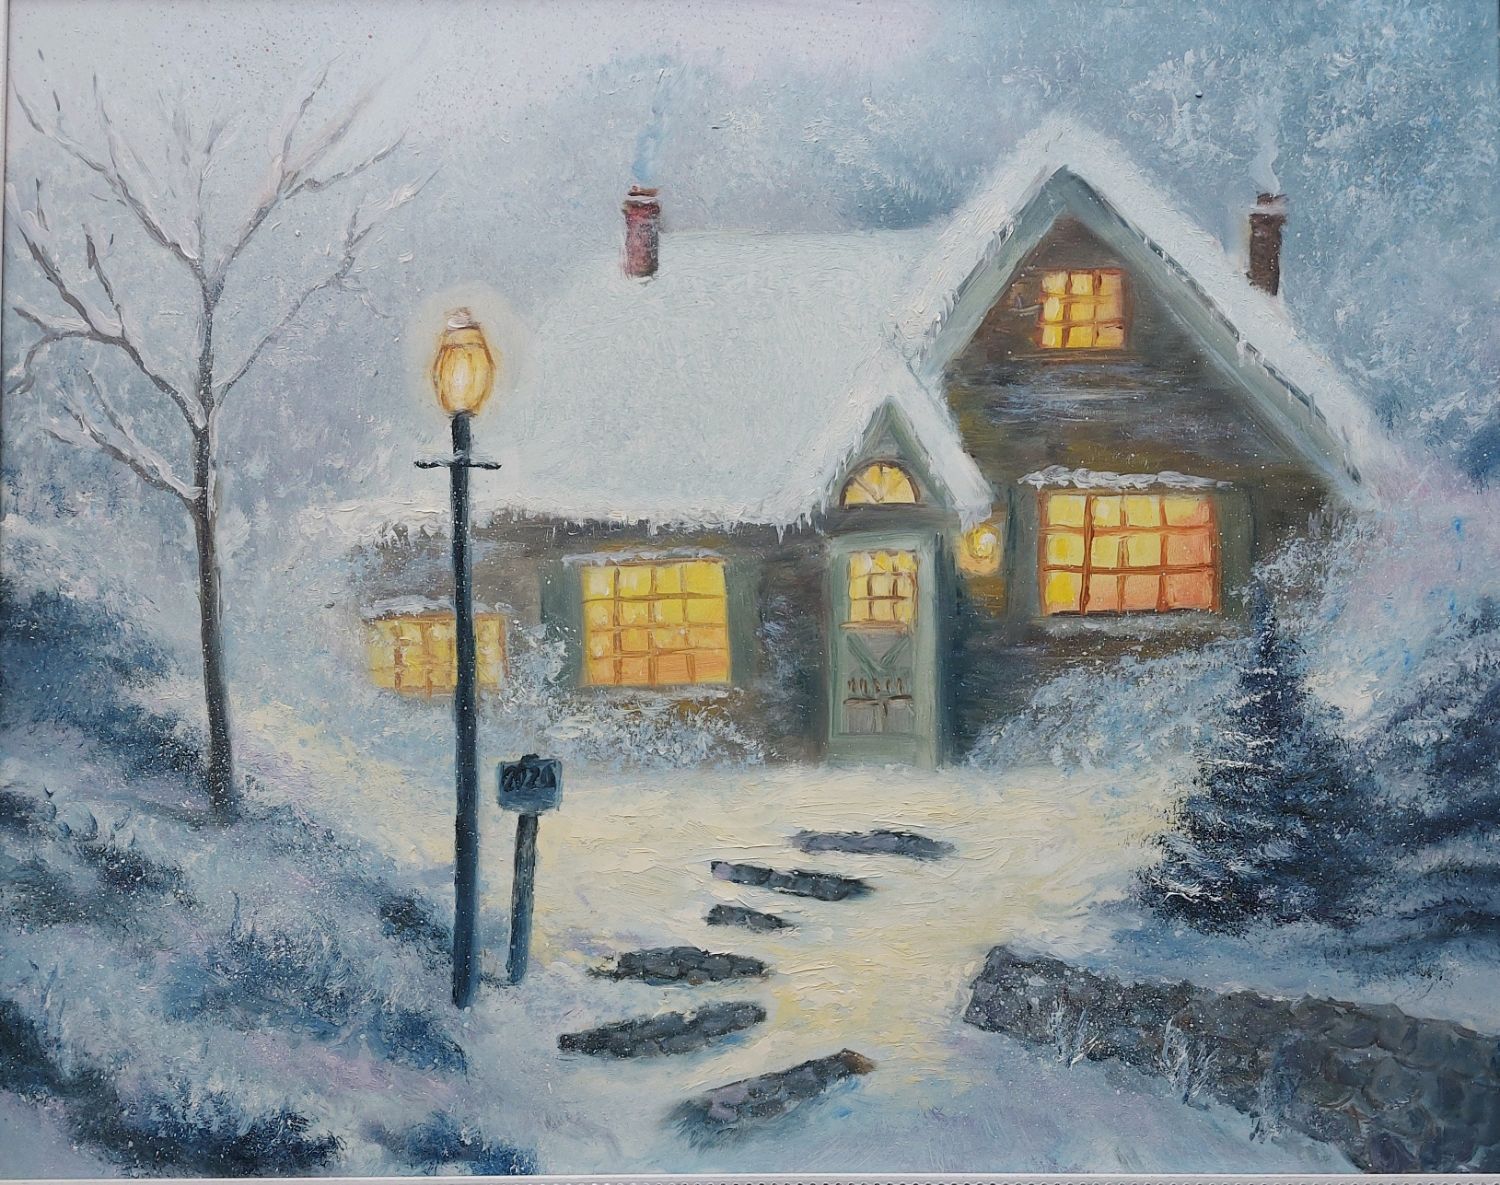 Снежный домик Изображения – скачать бесплатно на Freepik